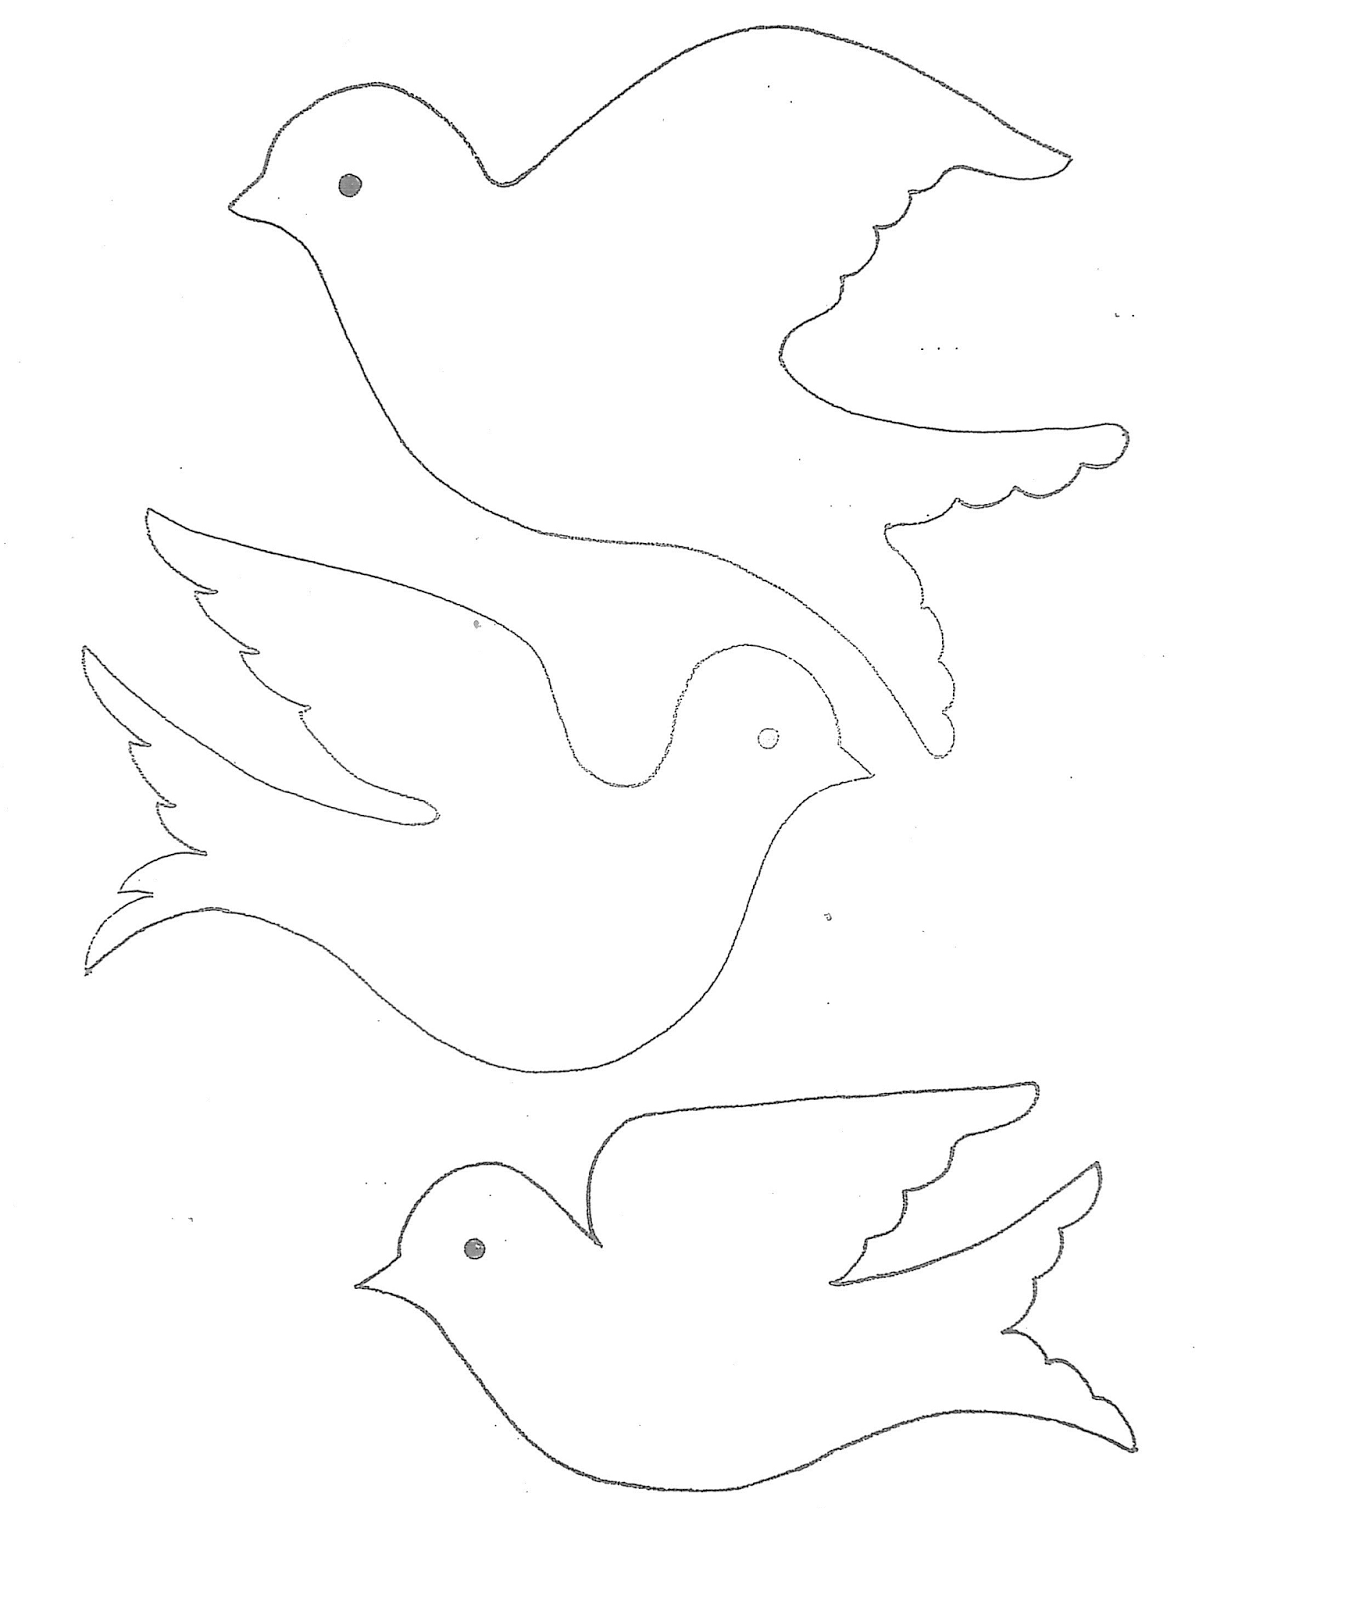 Шаблоны голубей для вырезания из бумаги распечатать формат а4: Шаблоны и трафарет голубя для вырезания из бумаги: скачать и распечатать А4